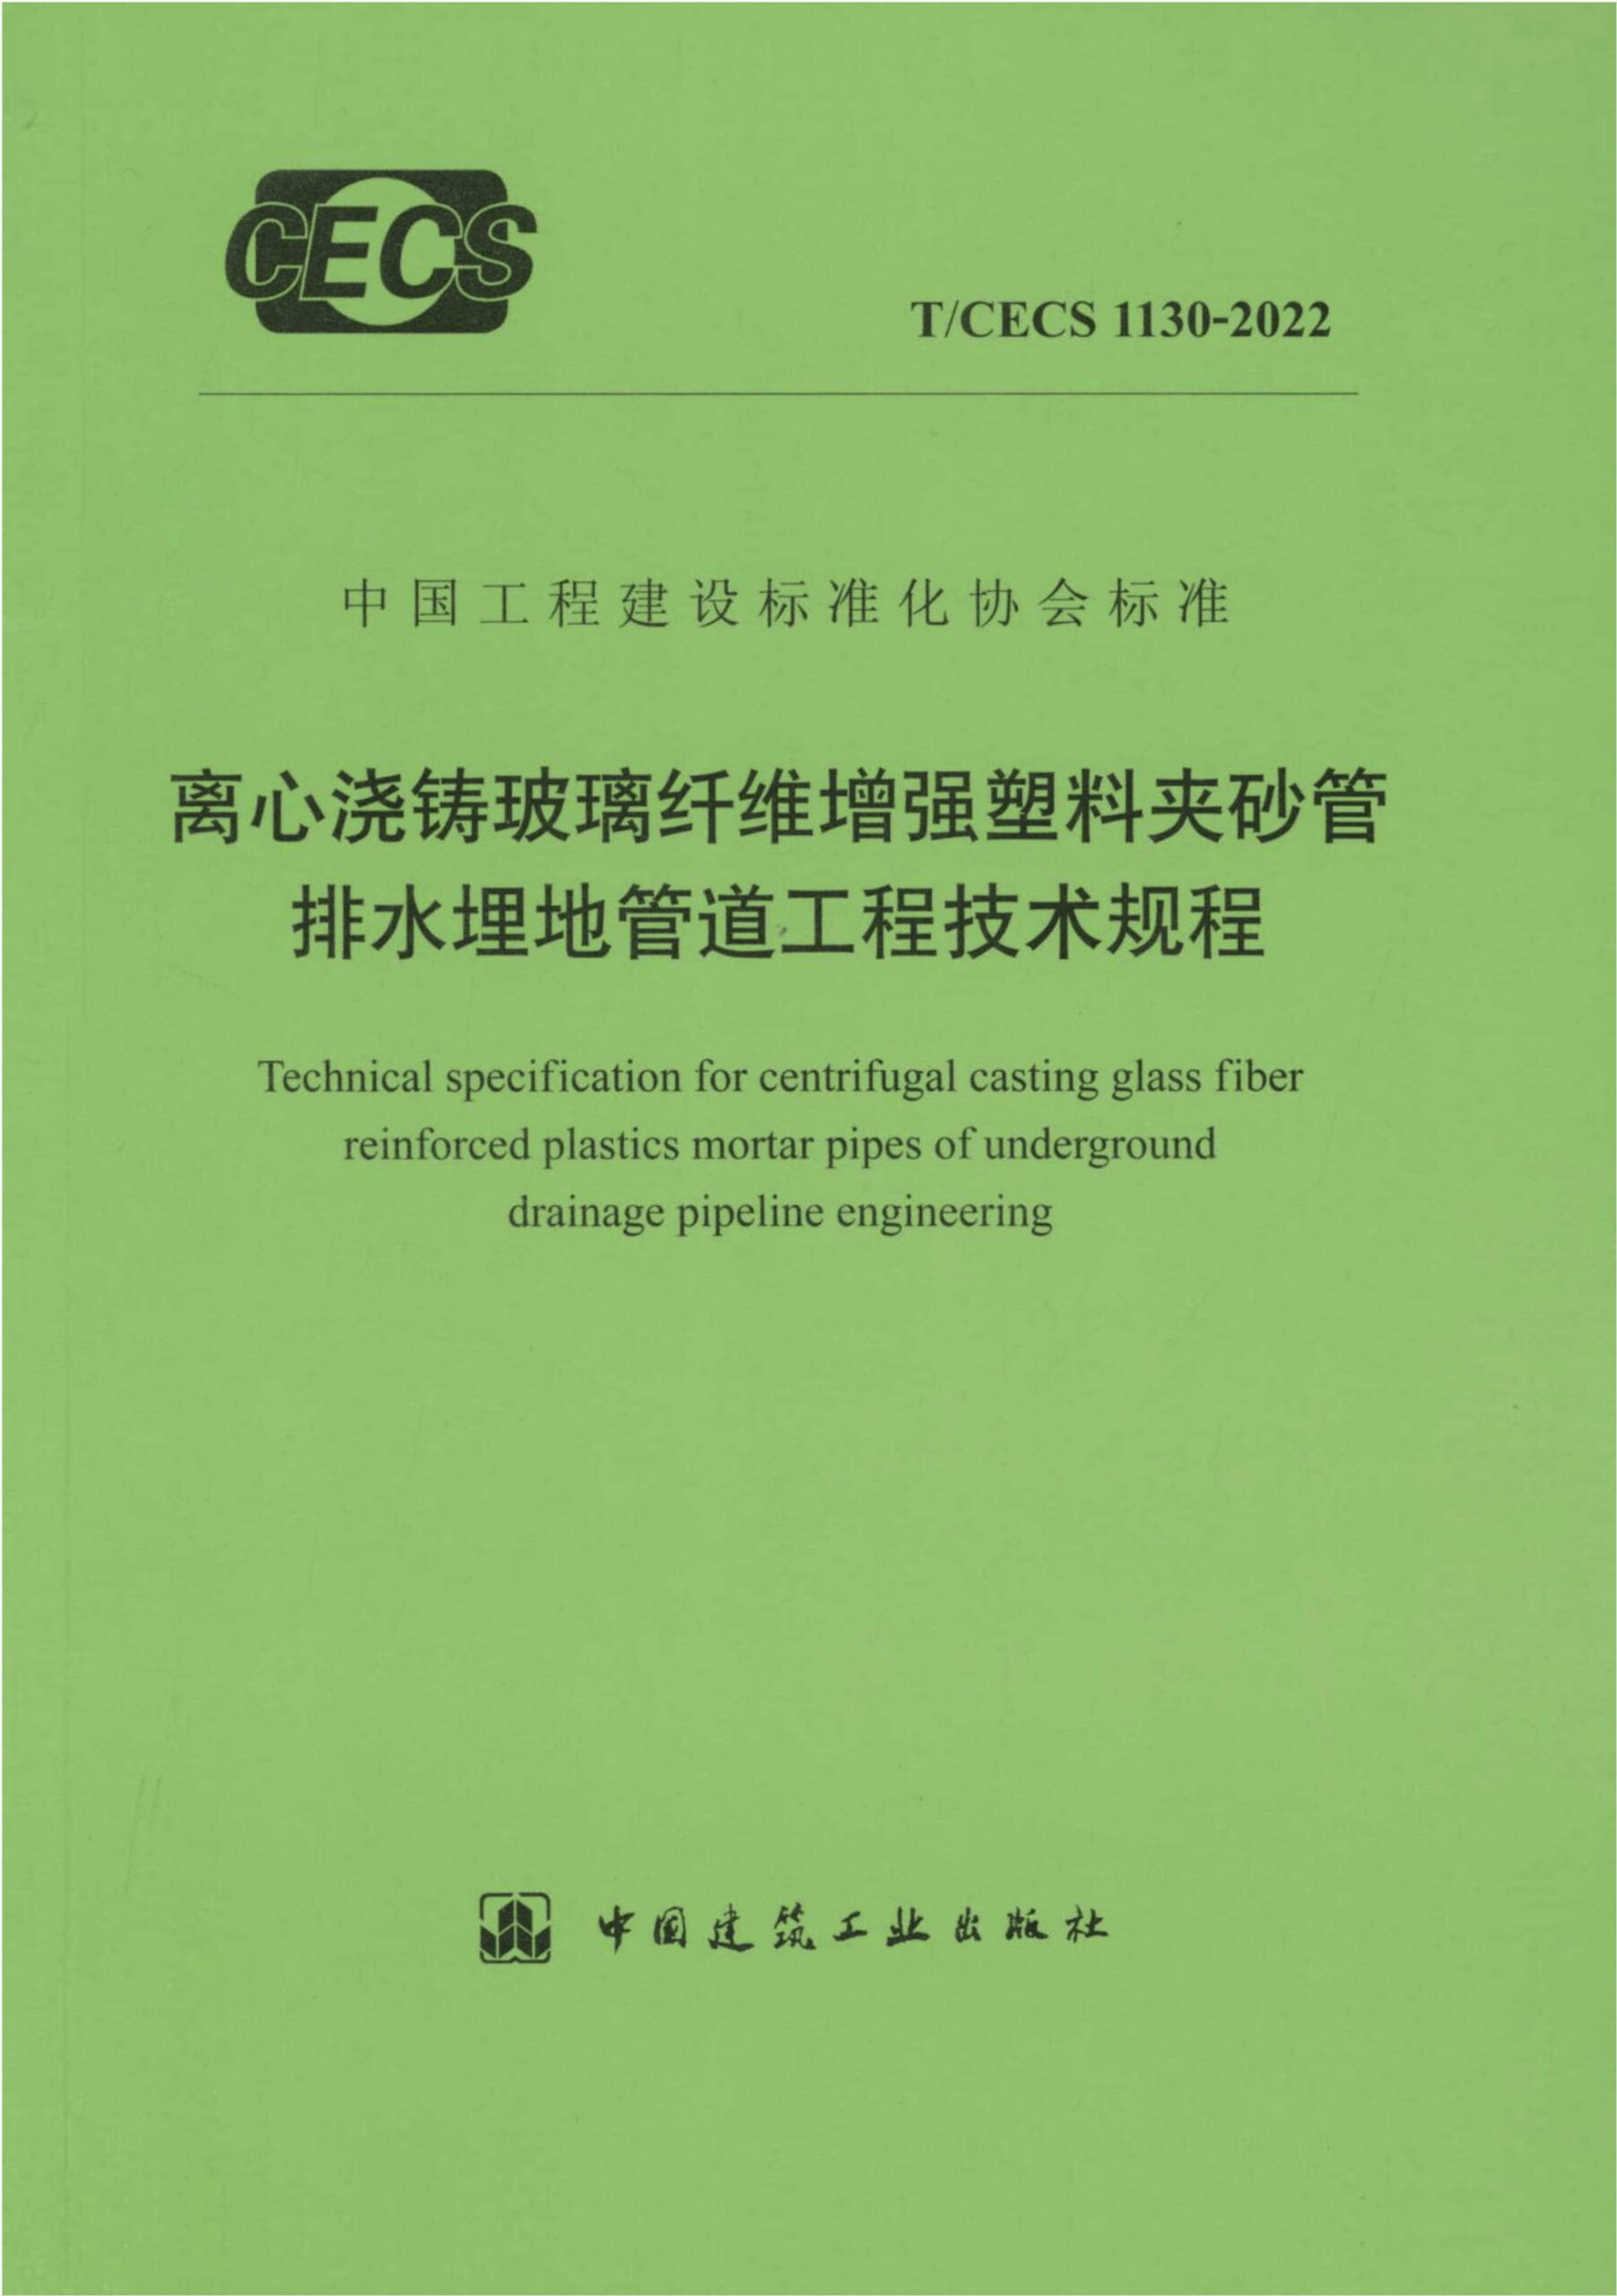 T/CECS 1130-2022 离心浇铸玻璃纤维增强塑料夹砂管排水埋地管道工程技术规程